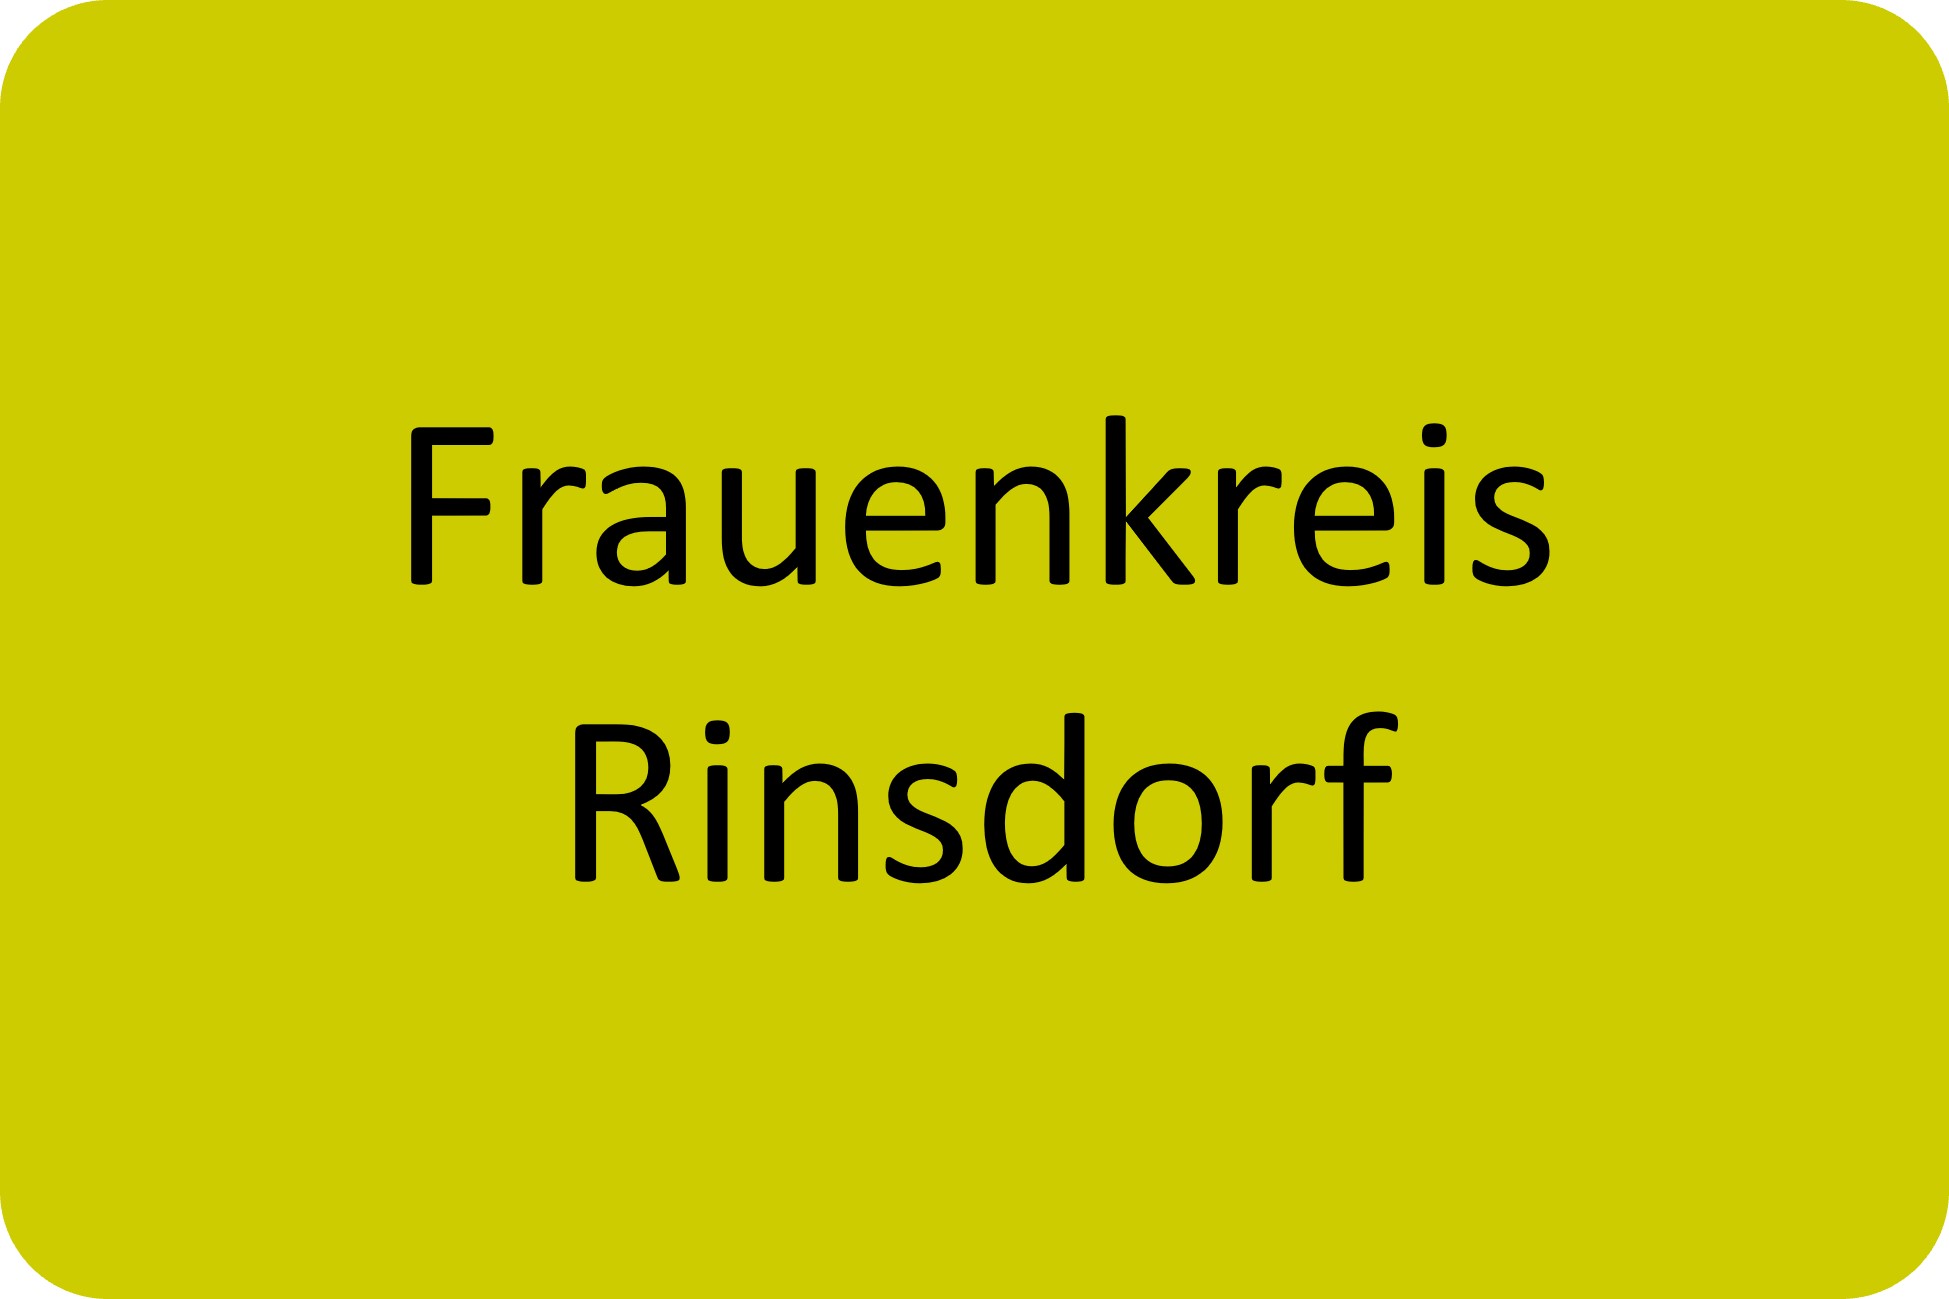 Frauenkreis Rinsdorf